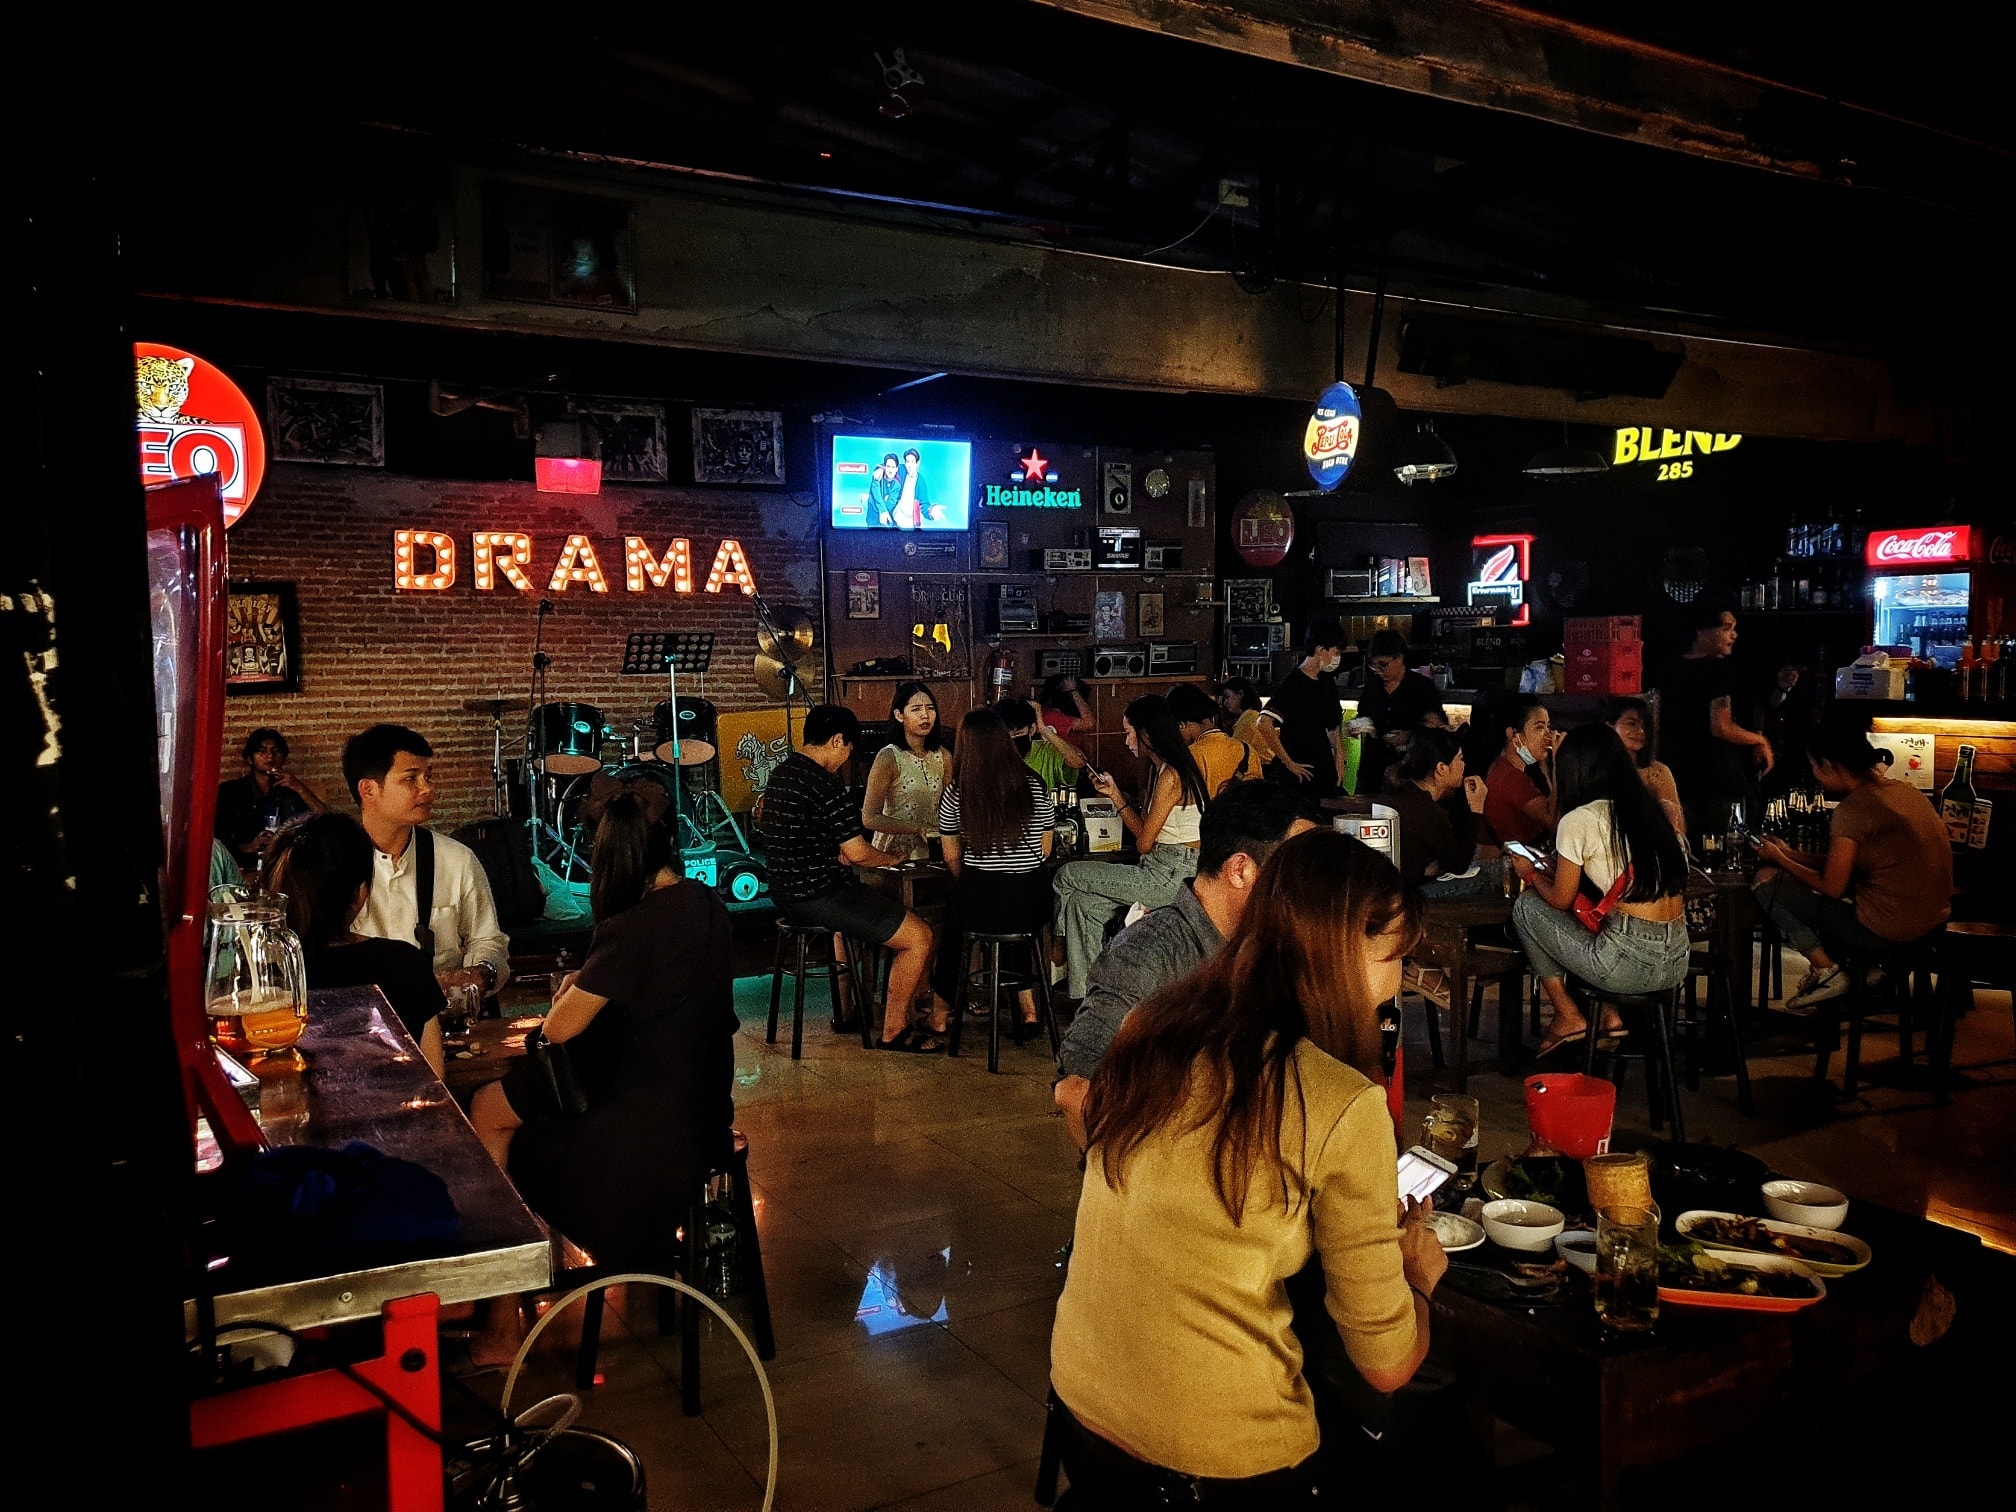 ดราม่า คาเฟ่2 (Dramacafe2) : กรุงเทพมหานคร (Bangkok)